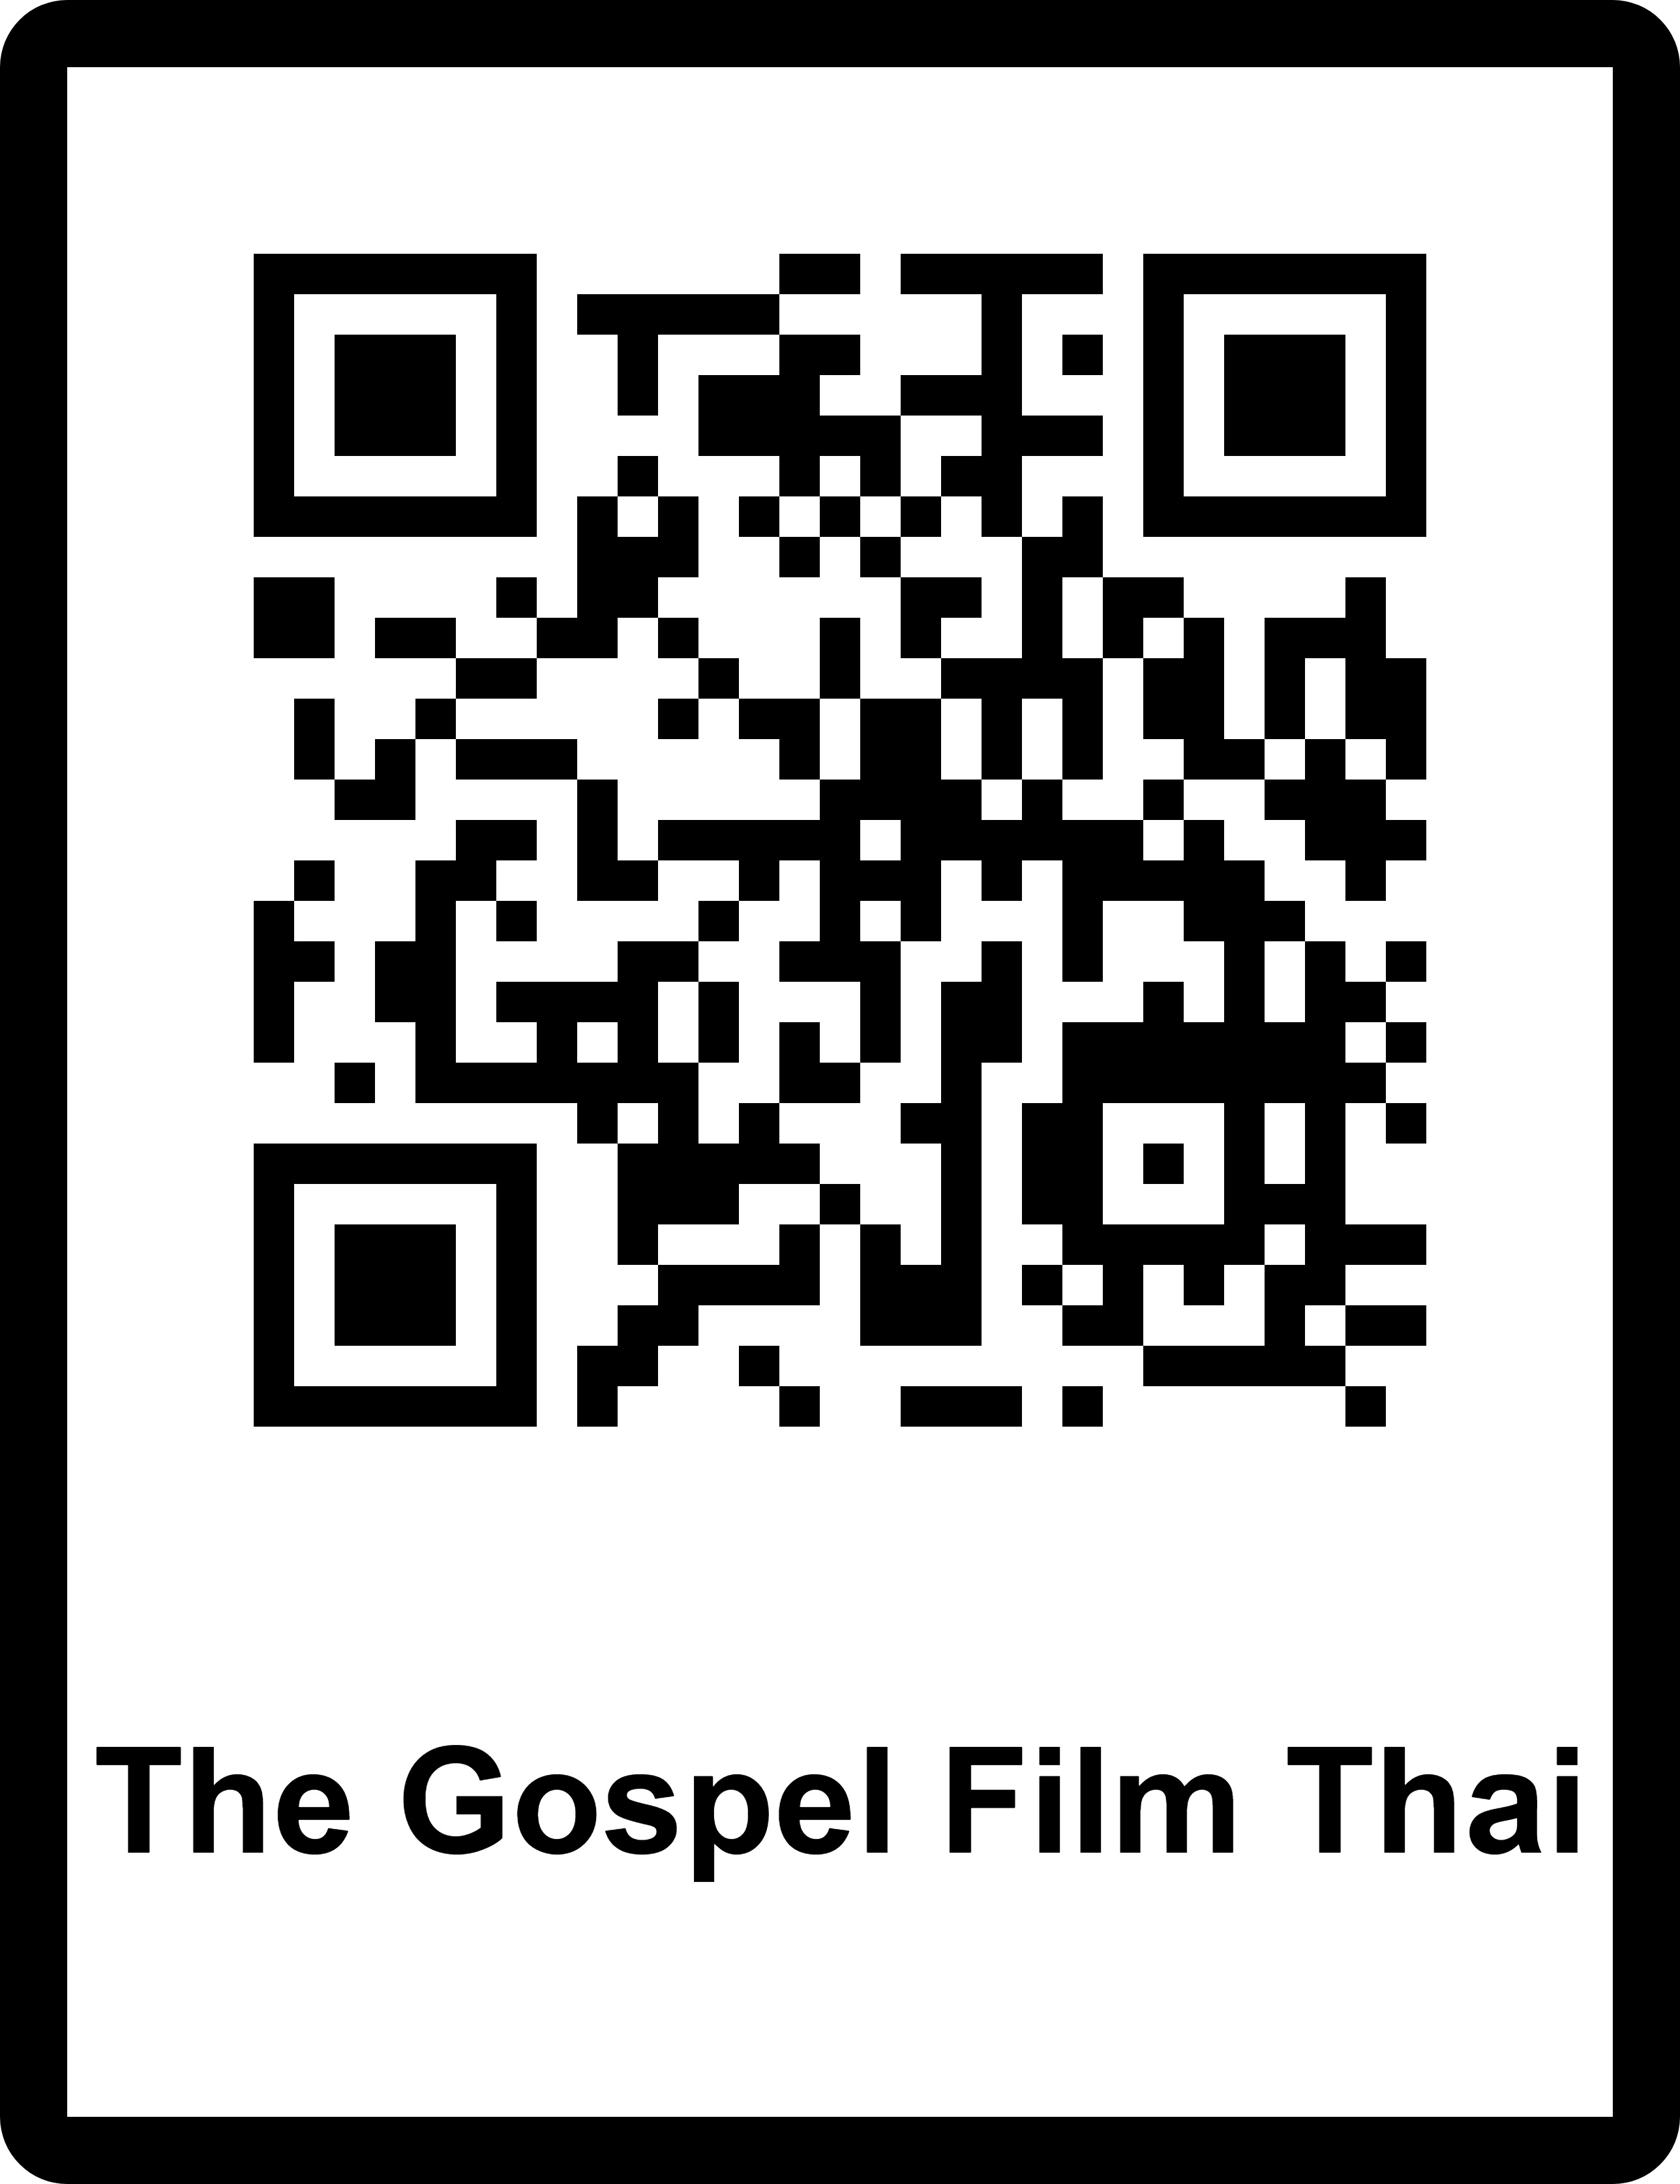 The Gospel Film Thai